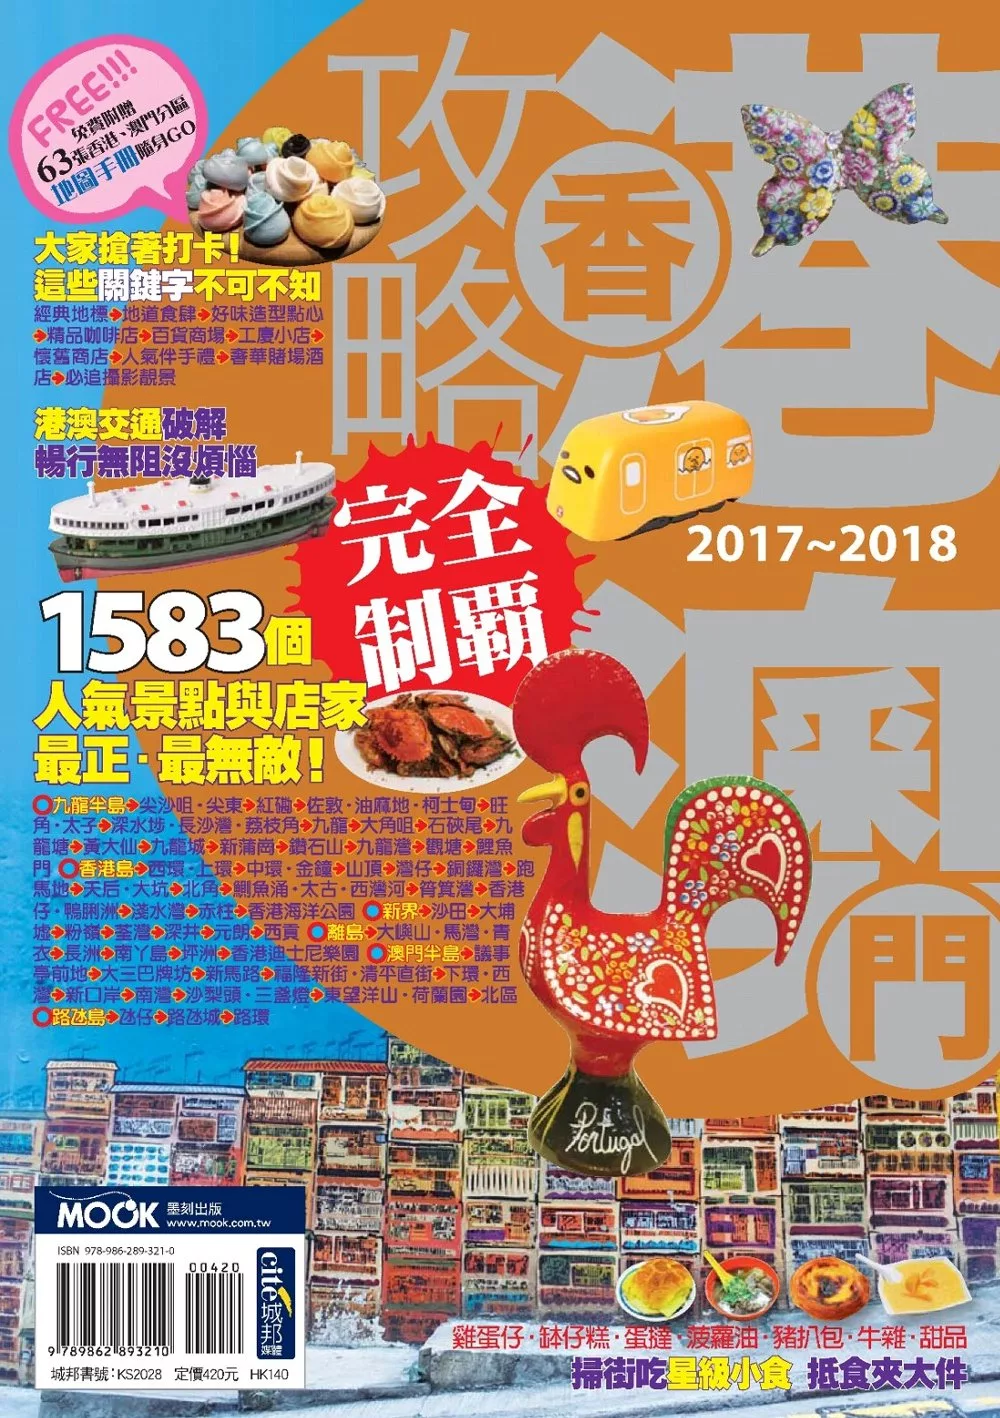 香港澳門攻略完全制霸2017-2018 (電子書)